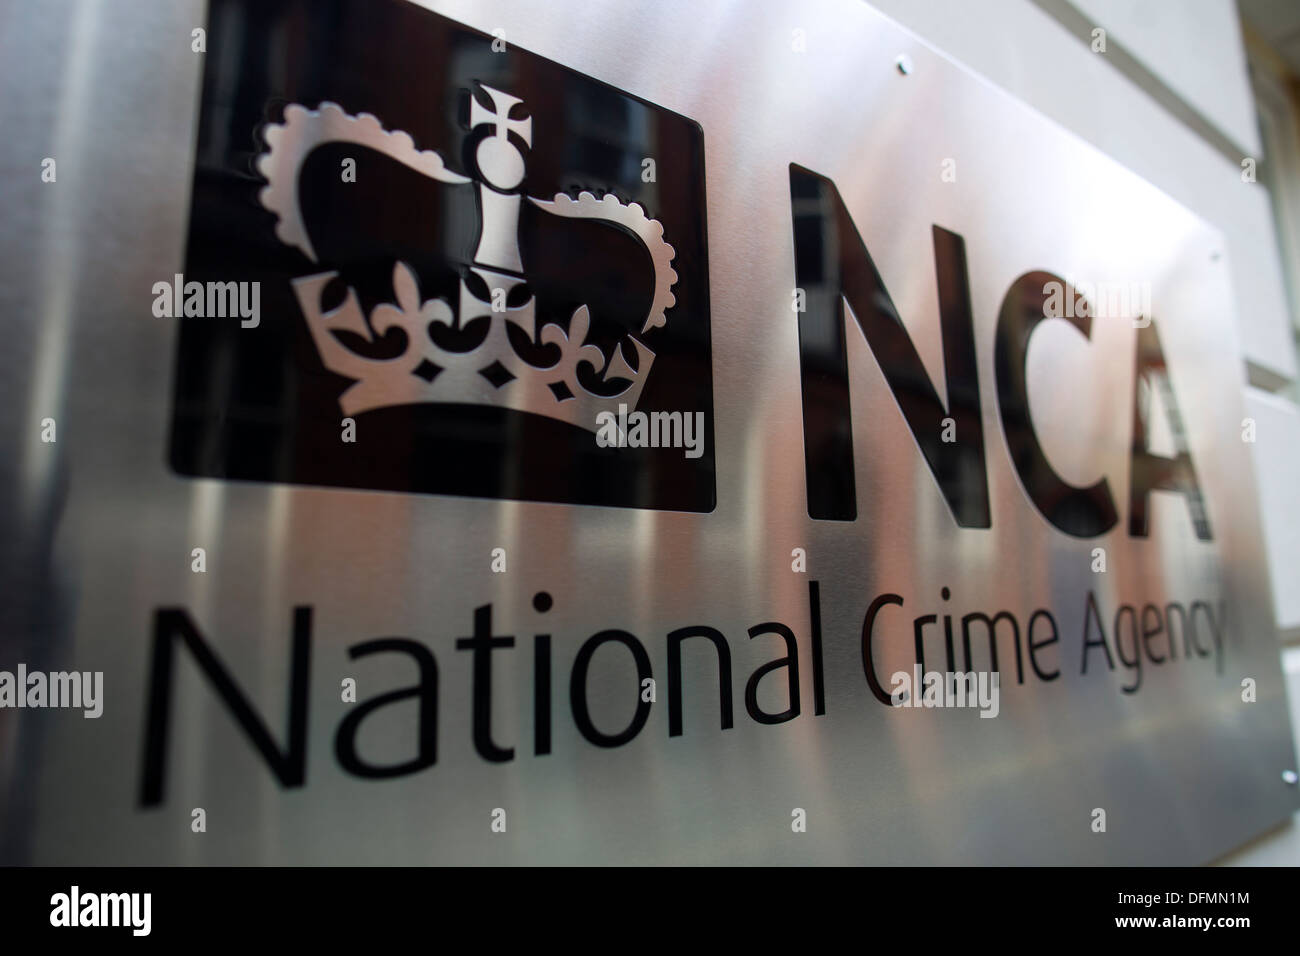 Regno Unito, Londra : La criminalità nazionale agenzia sede di NCA sono illustrati nel centro di Londra il 7 ottobre 2013. Foto Stock